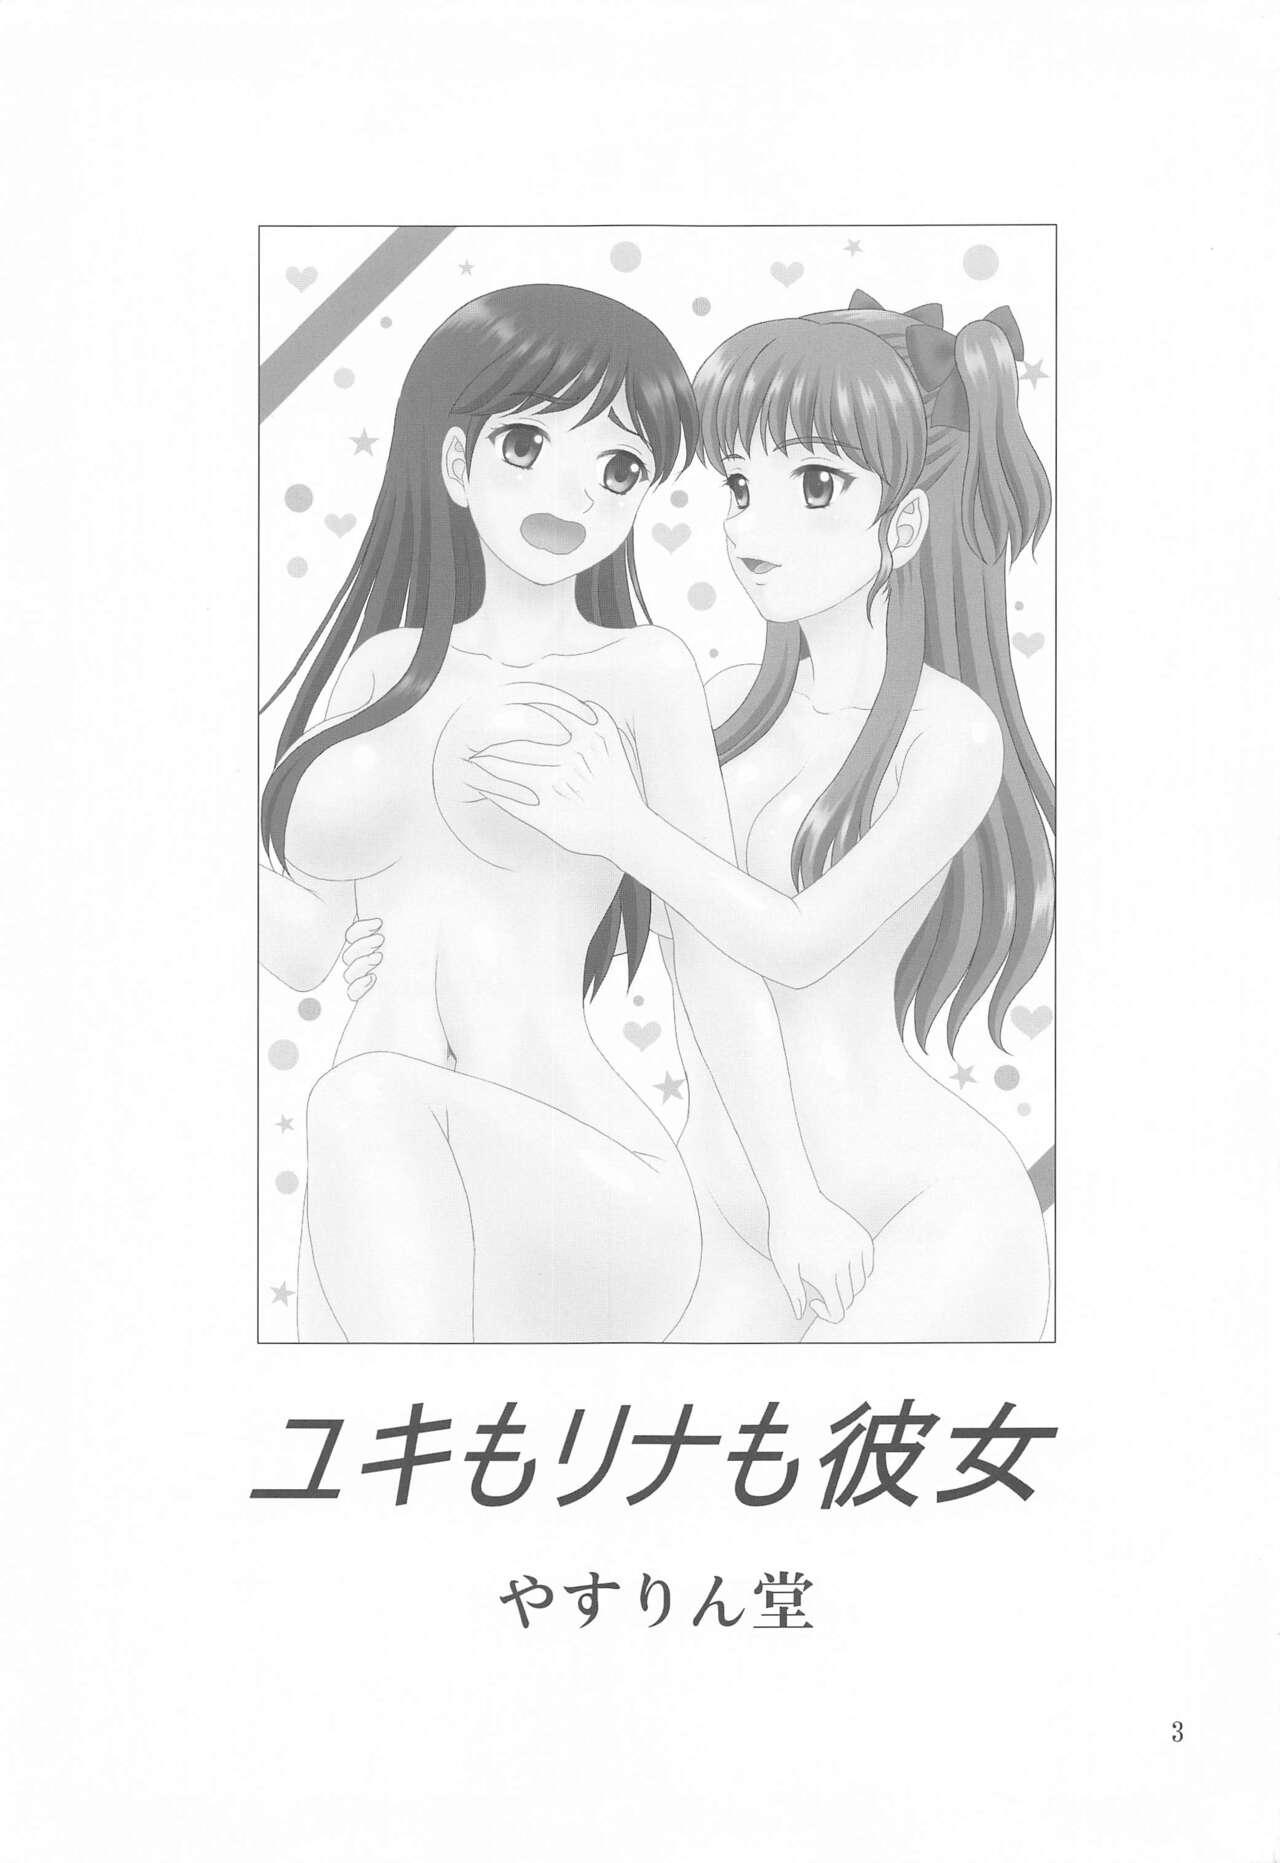 Ddf Porn Yuki mo Rina mo Kanojo - White album Game - Page 2